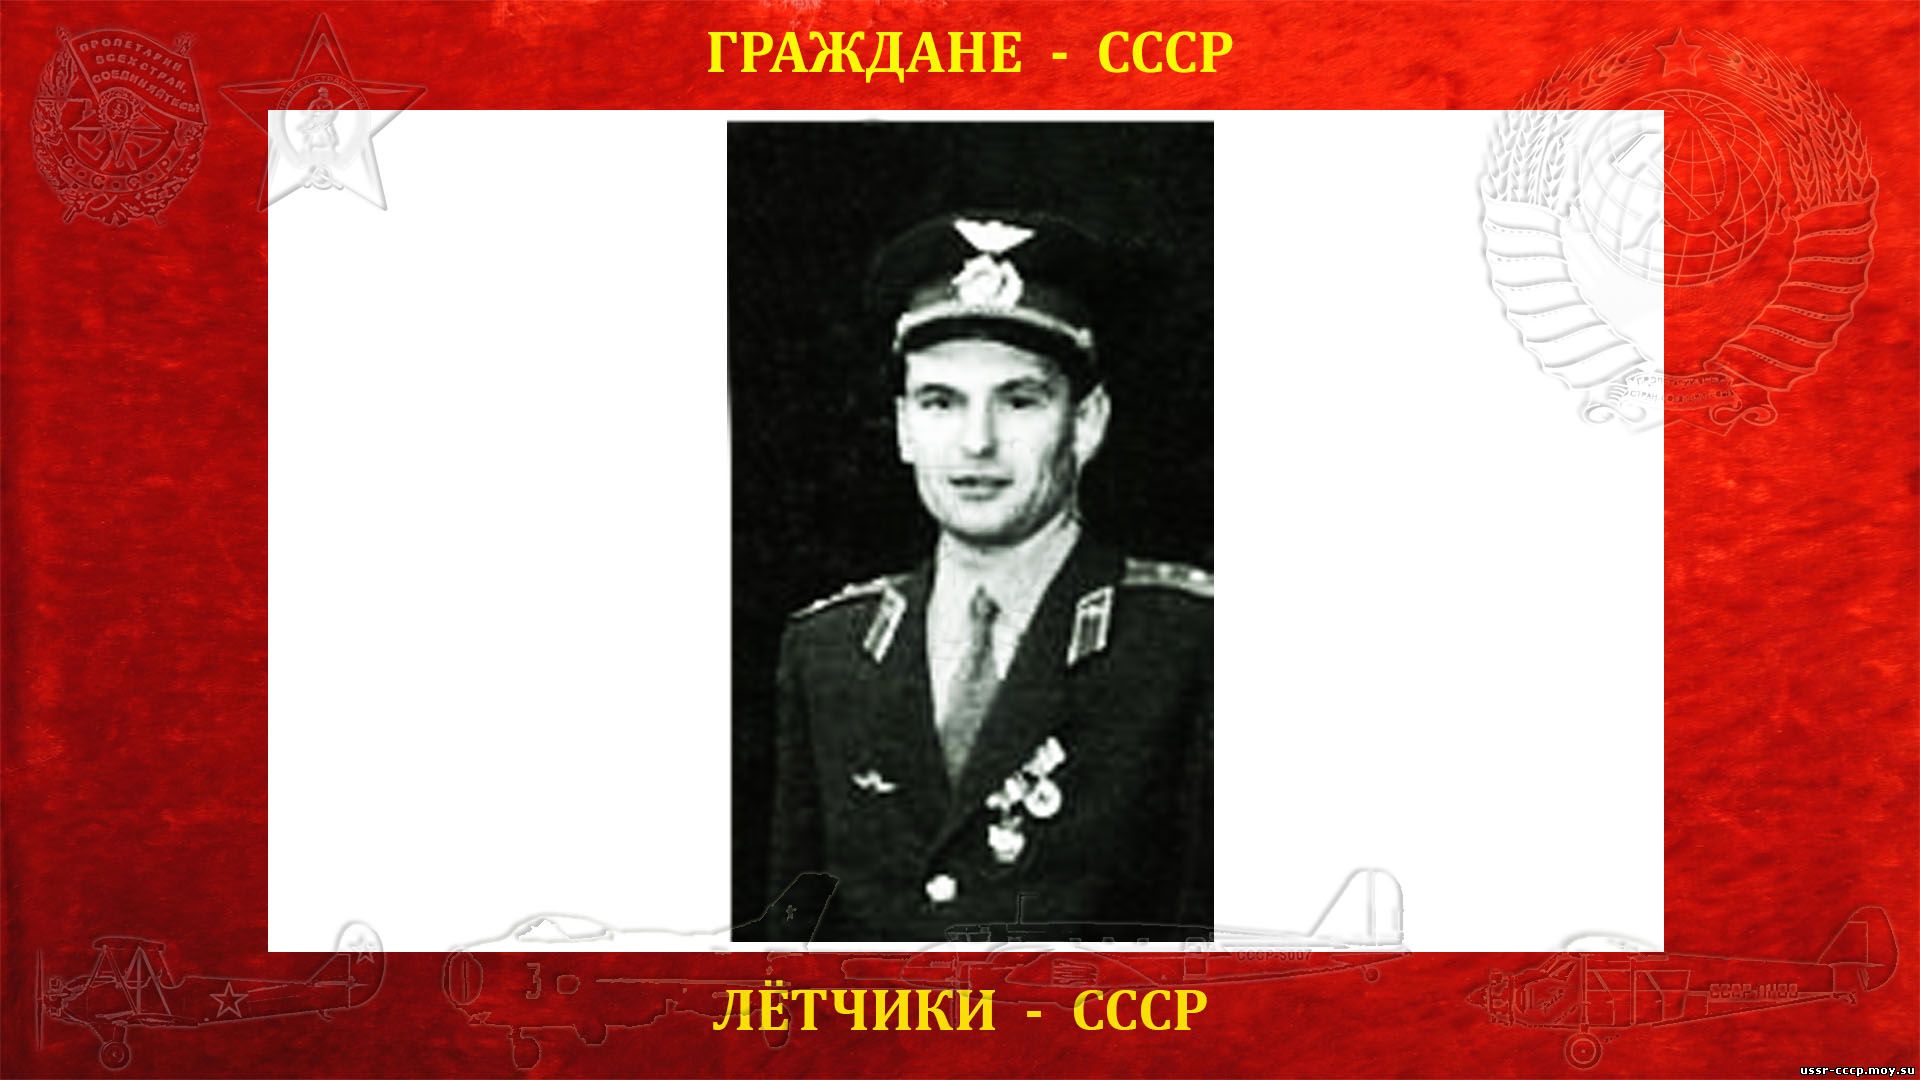 Иванников Виталий Григорьевич — Советский лётчик СССР (??.??.19?? - ??.??.19??) (биография не найдена)